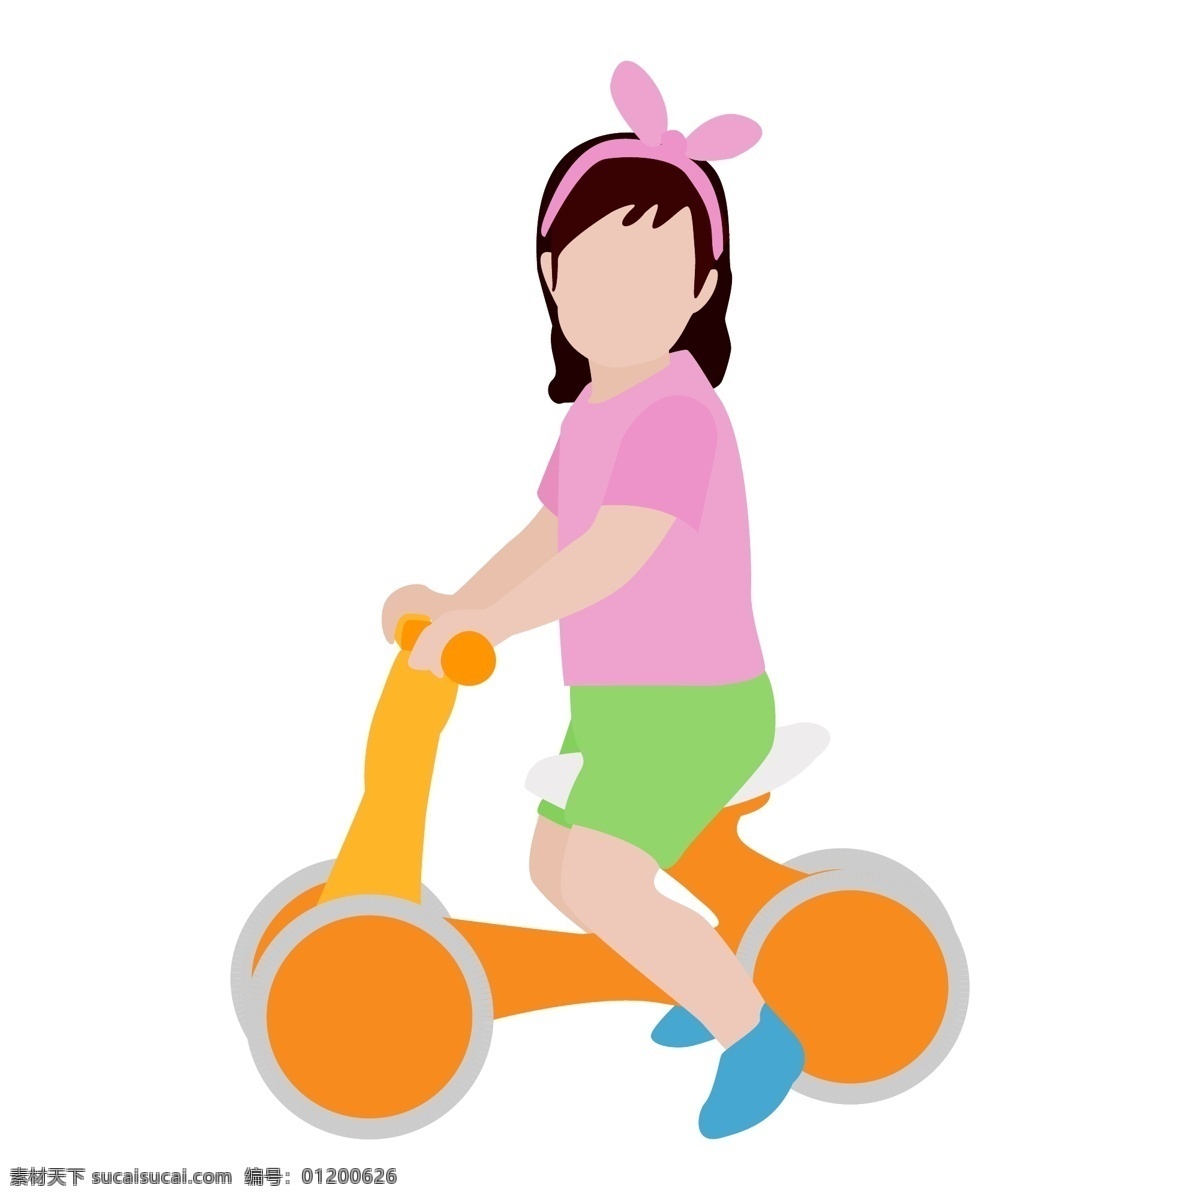 小女孩 骑 平衡 车 矢量 儿童 幼儿 骑车 平衡车 四轮车 运动 锻炼 玩耍 卡通 手绘 可爱的 小清新